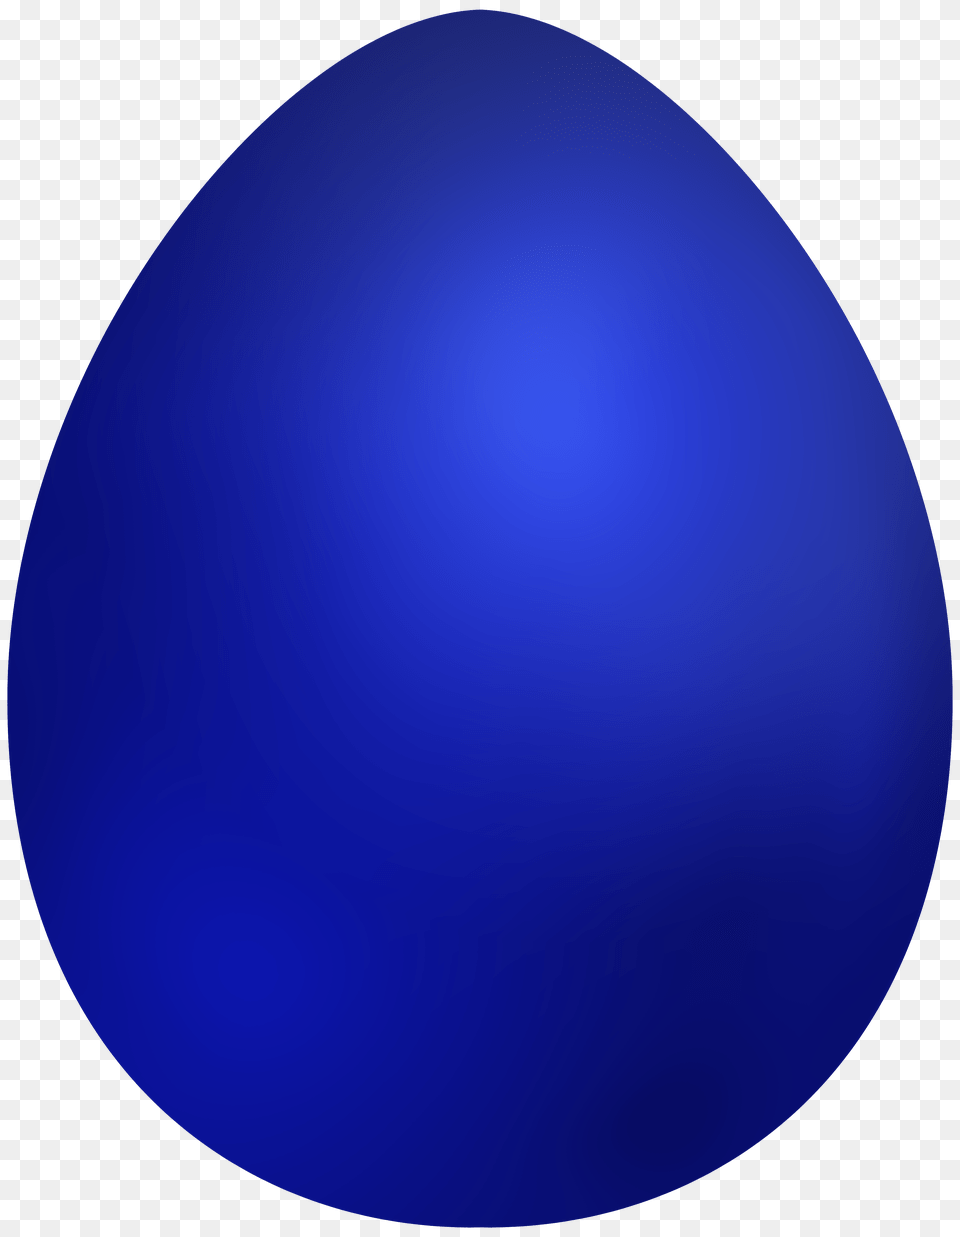 Blue Easter Egg Clip Art, Food, Easter Egg Free Png Download